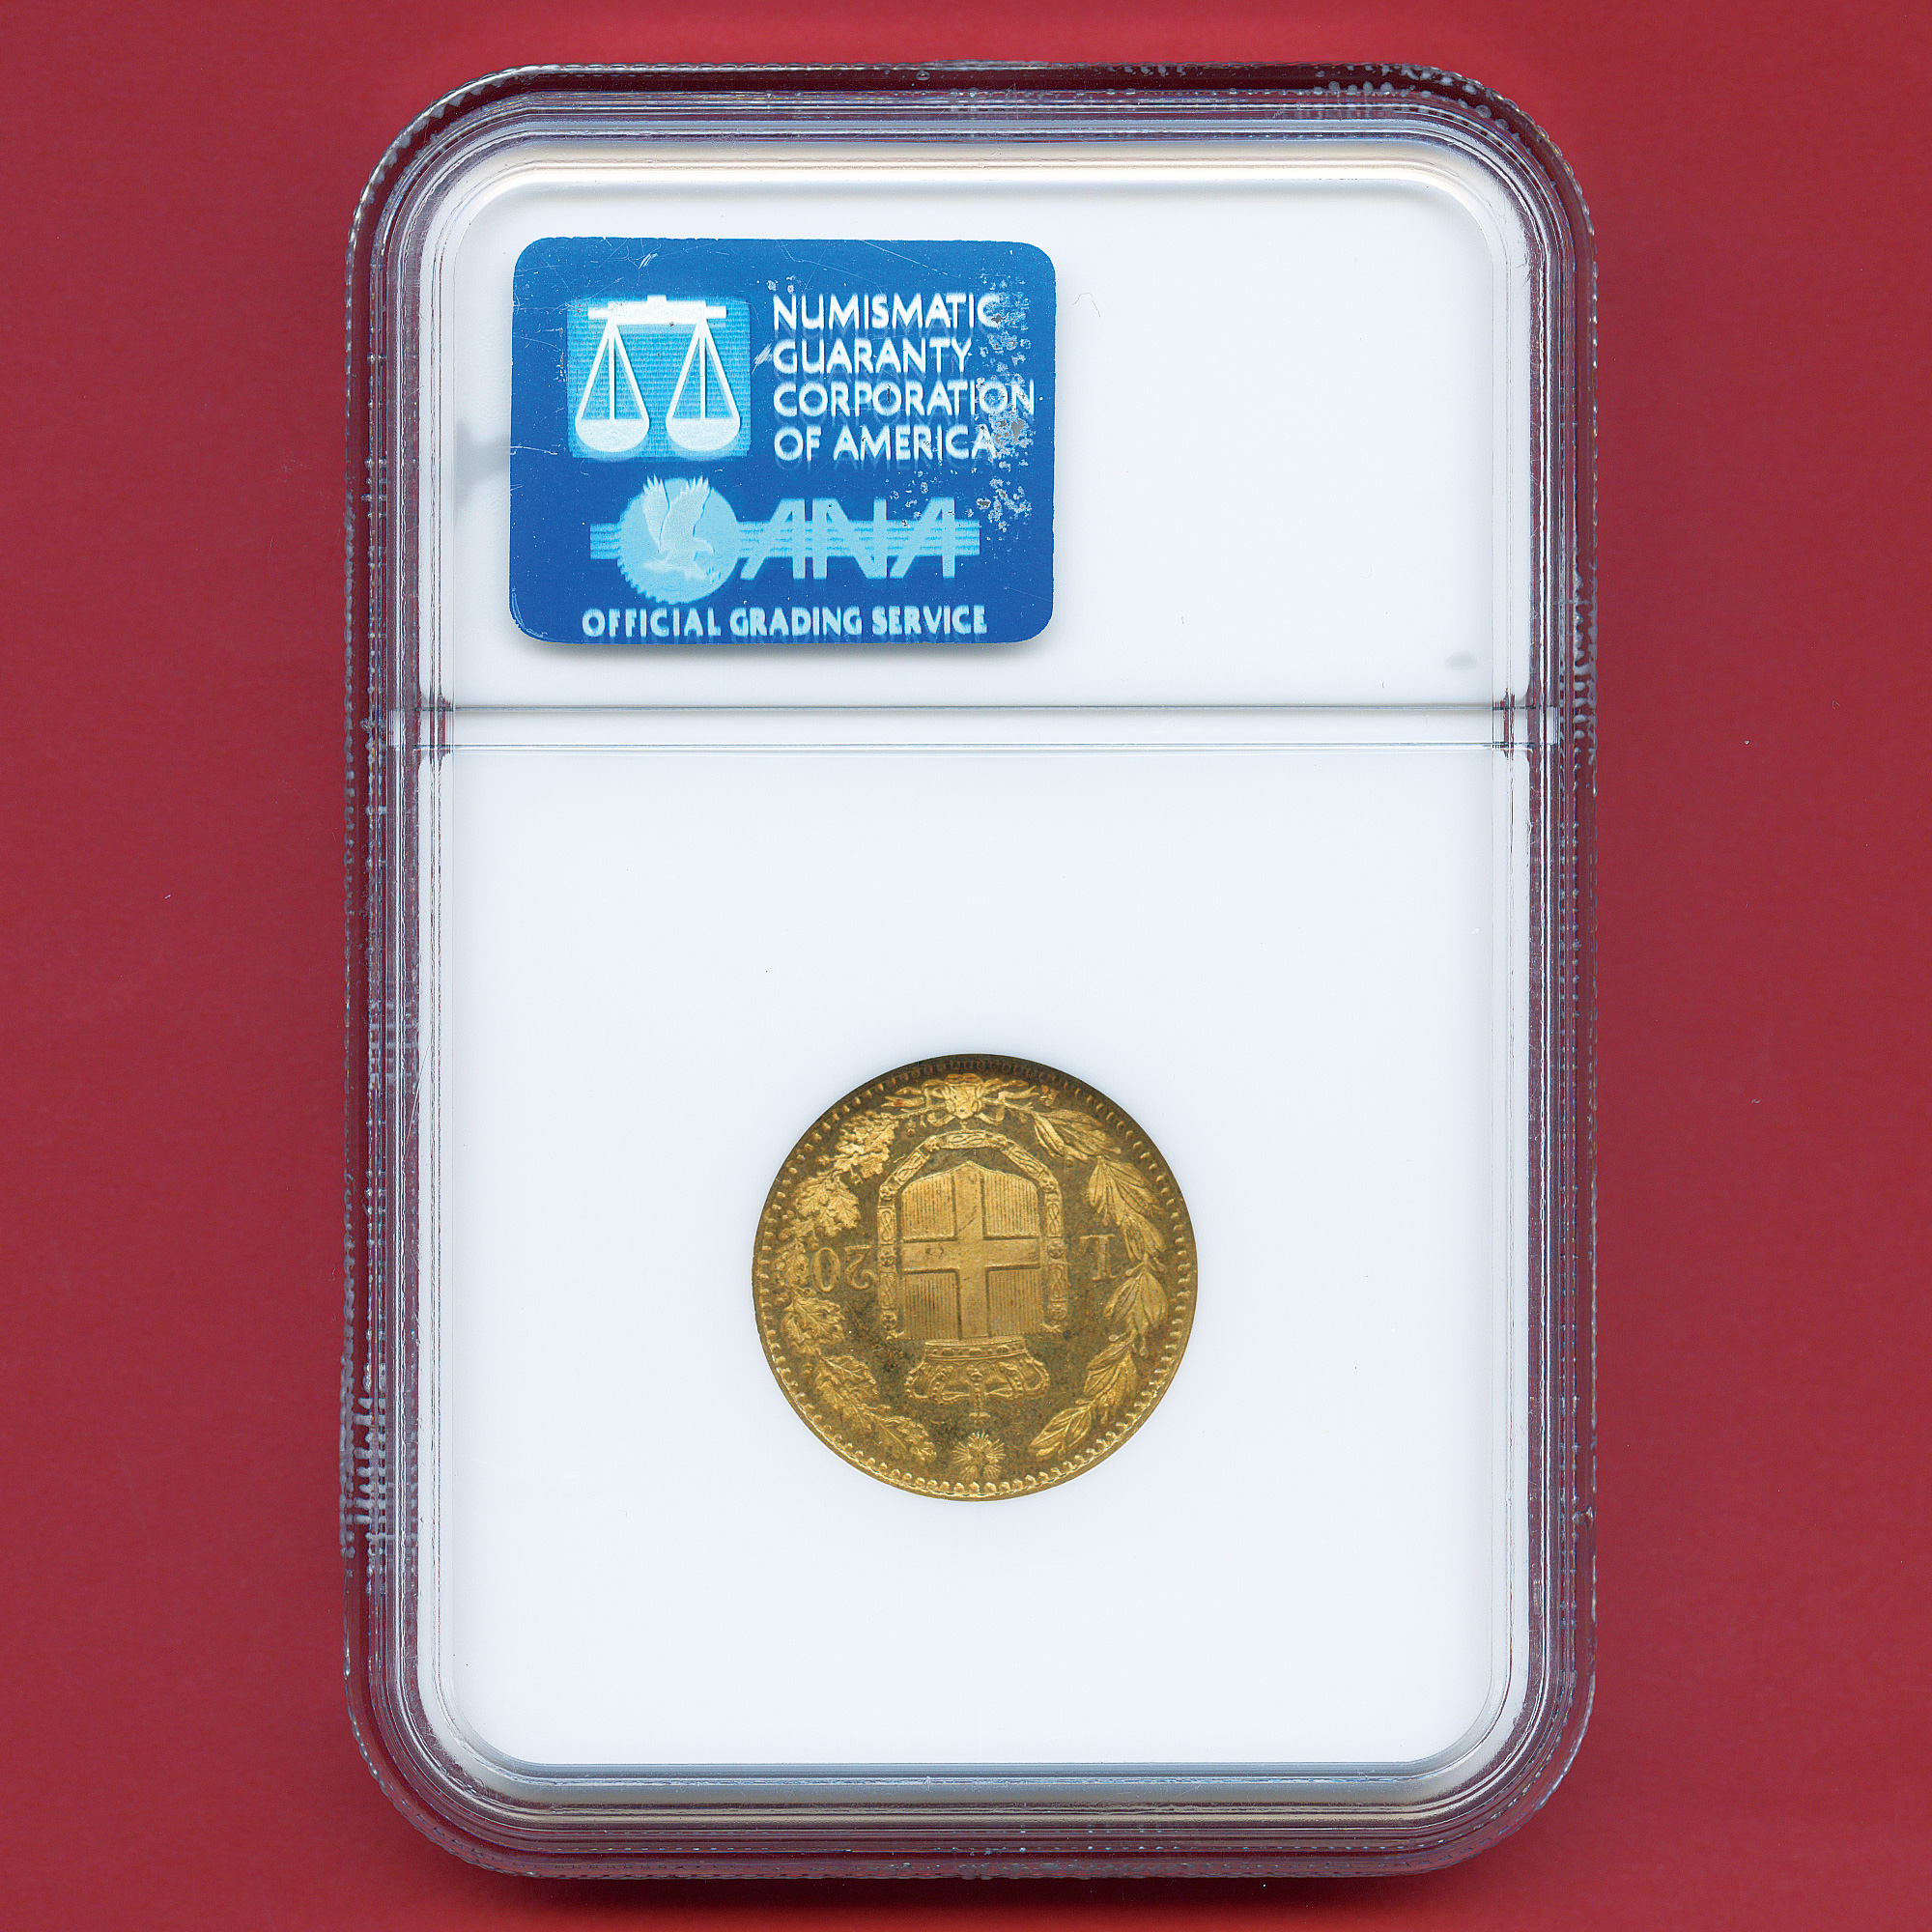 全コイン :: アンティーク :: イタリア 20リレ金貨 イタリア王国の第2代国王ウンベルト1世 / サヴォイア家の紋章 1882 MS66  最高鑑定 - アンティークコイン